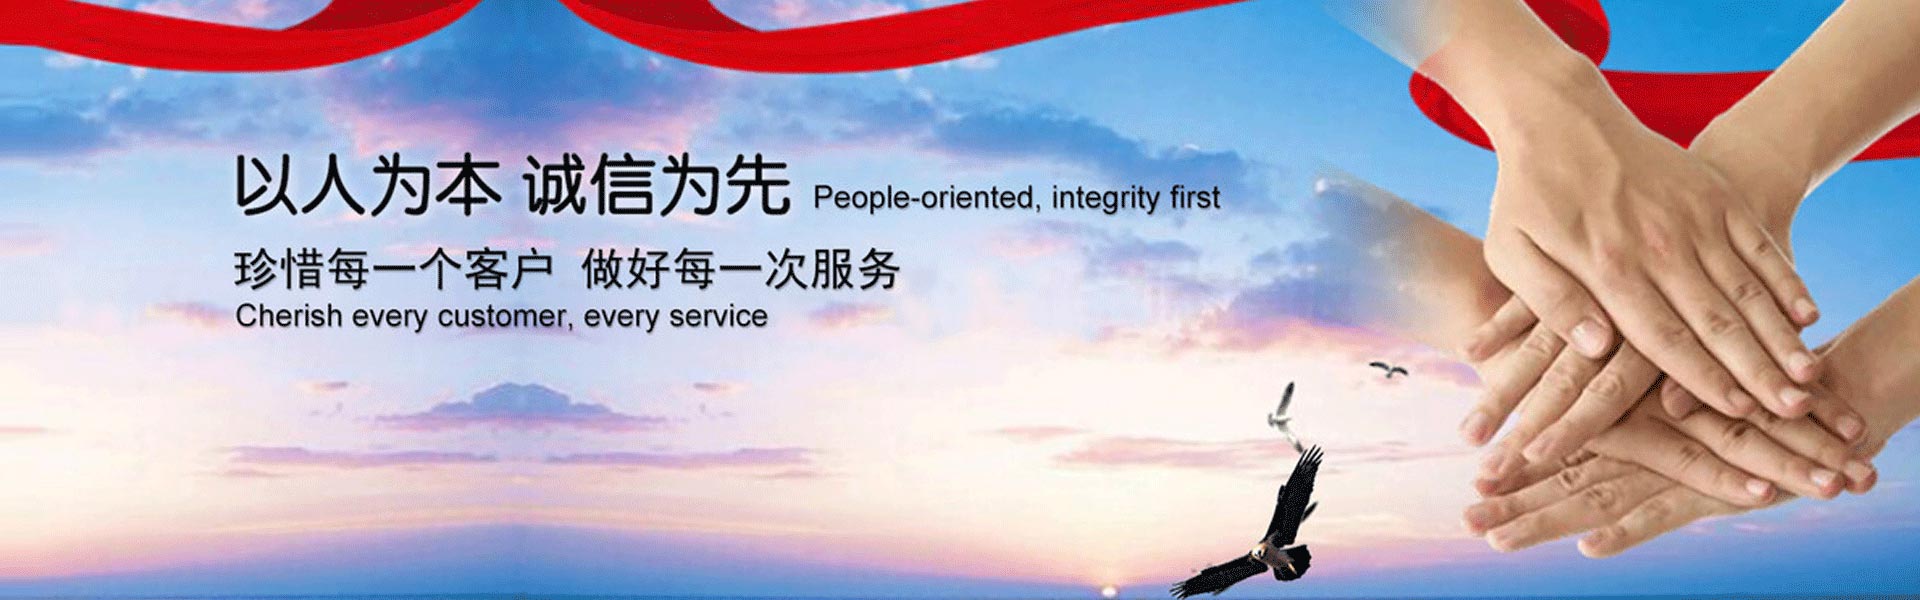 连云港商标注册服务机构是连云港地区最专业的商标注册平台,专注为个人和企业提供商标注册、商标申请、个体